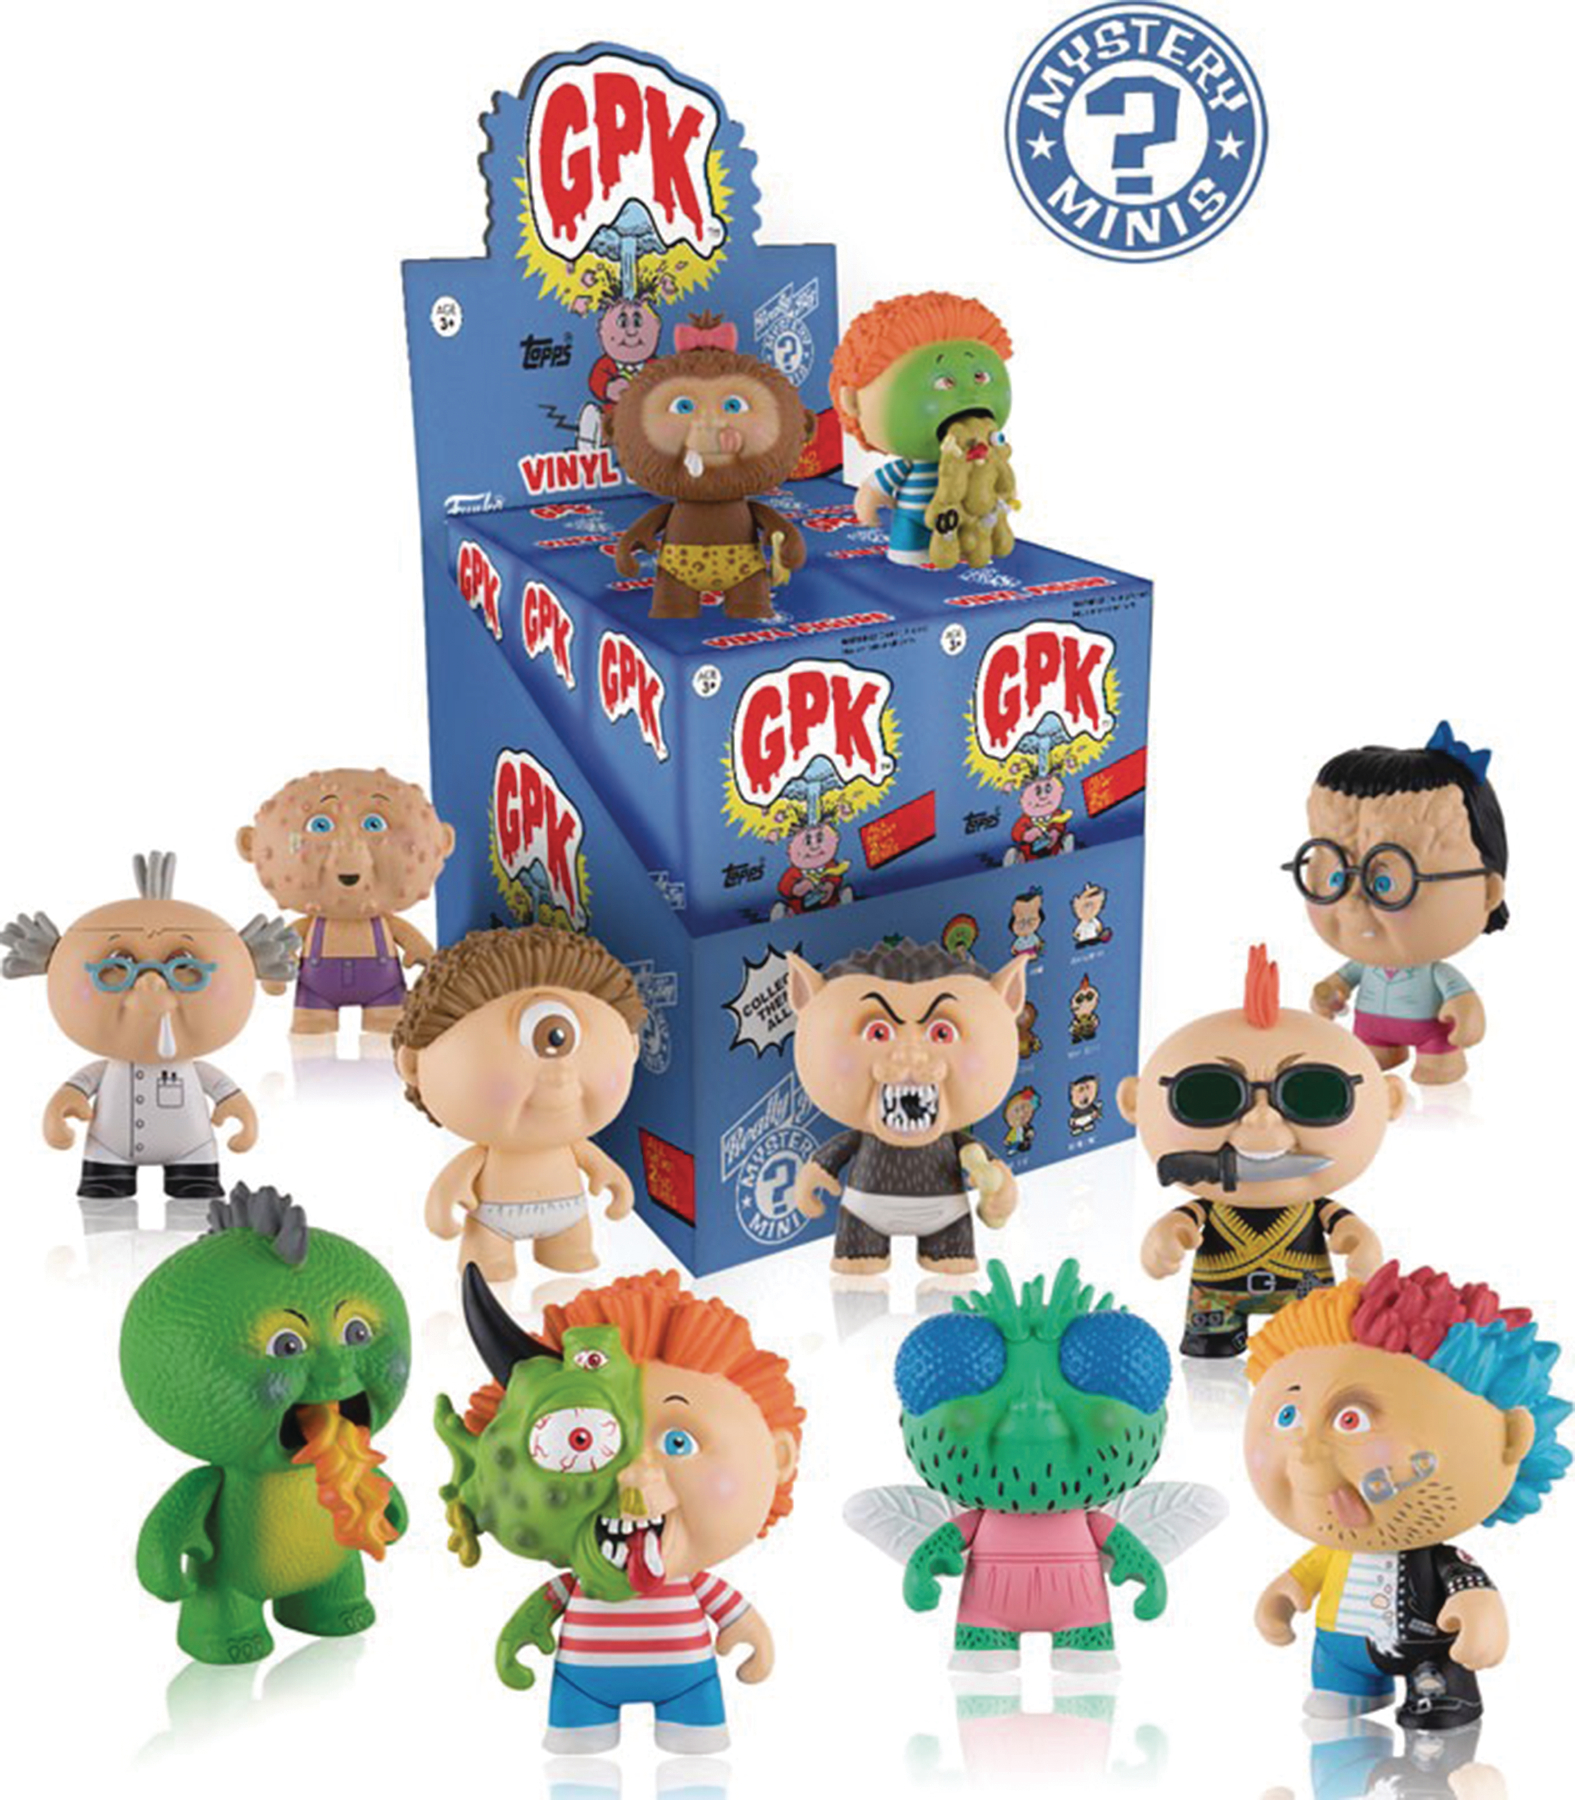 Мистери минис. Фигурка Funko Pop! GPK Garbage Pail Kids. Игровой набор Funko Pop! Vinyl: Garbage Pail Kids - Ghastly Ashley 26002. Serie 2 Mystery Minis.